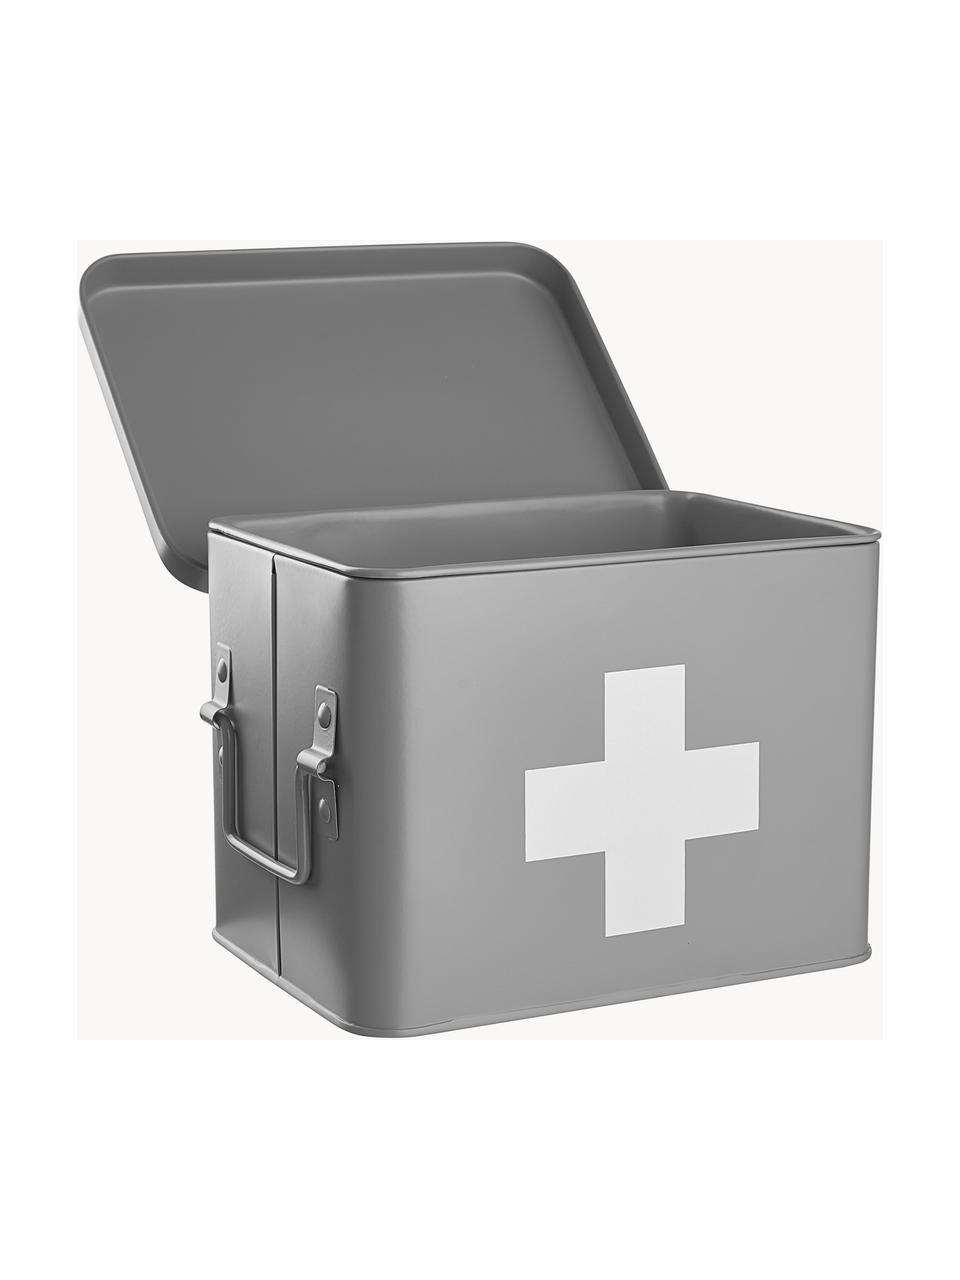 Pudełko do przechowywania Medic, Metal powlekany, Szary, biały, S 22 x W 16 cm